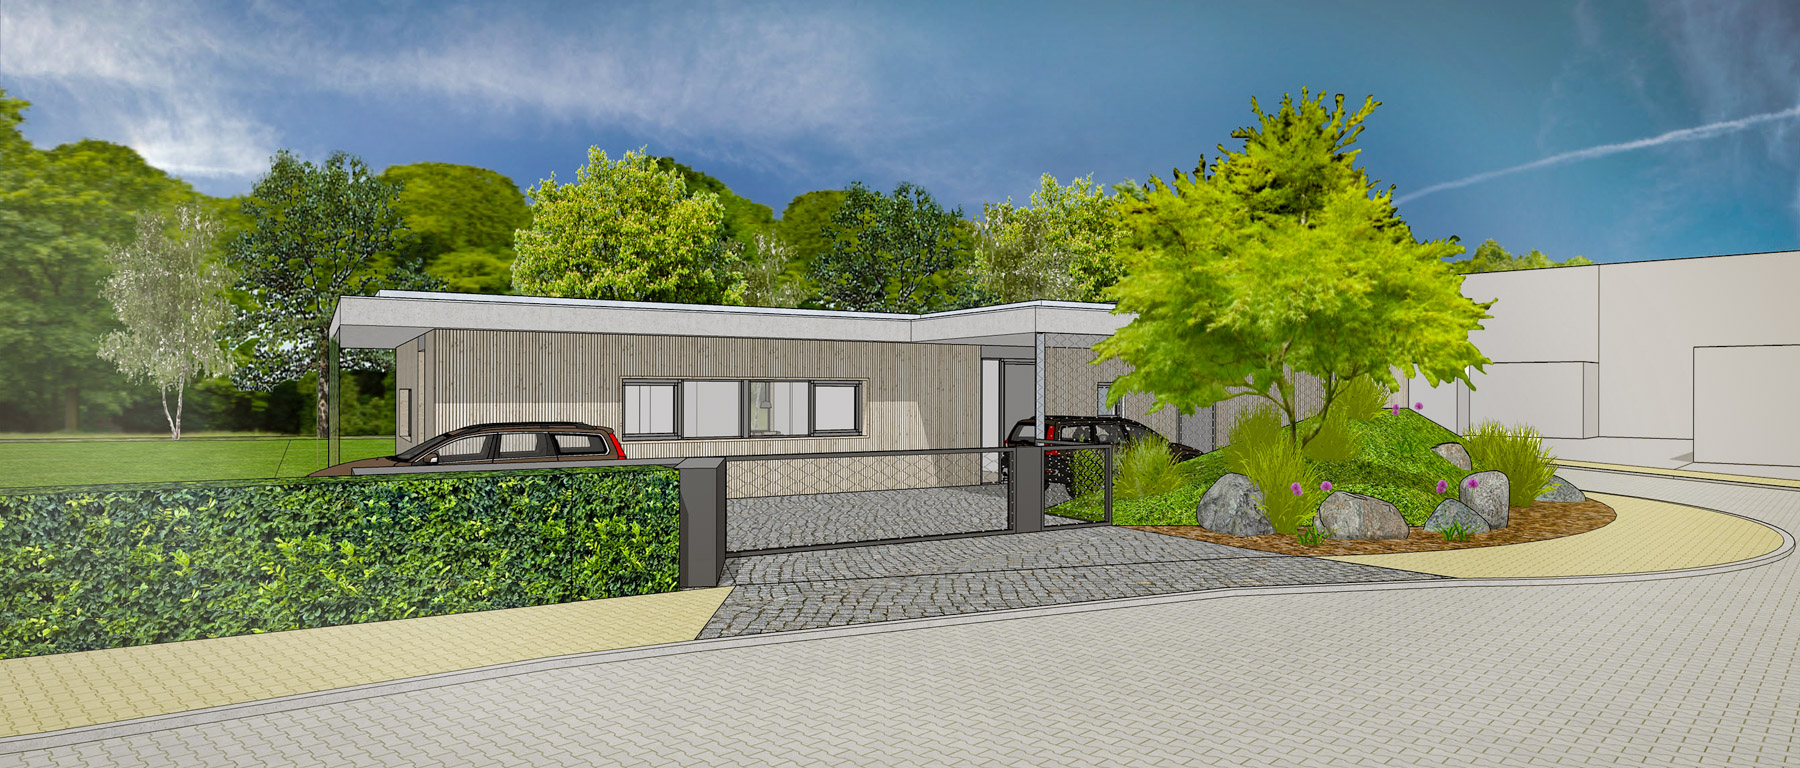 RD Kolovraty - Zajímavě řešený přízemní rodinný dům se zelenou střechou